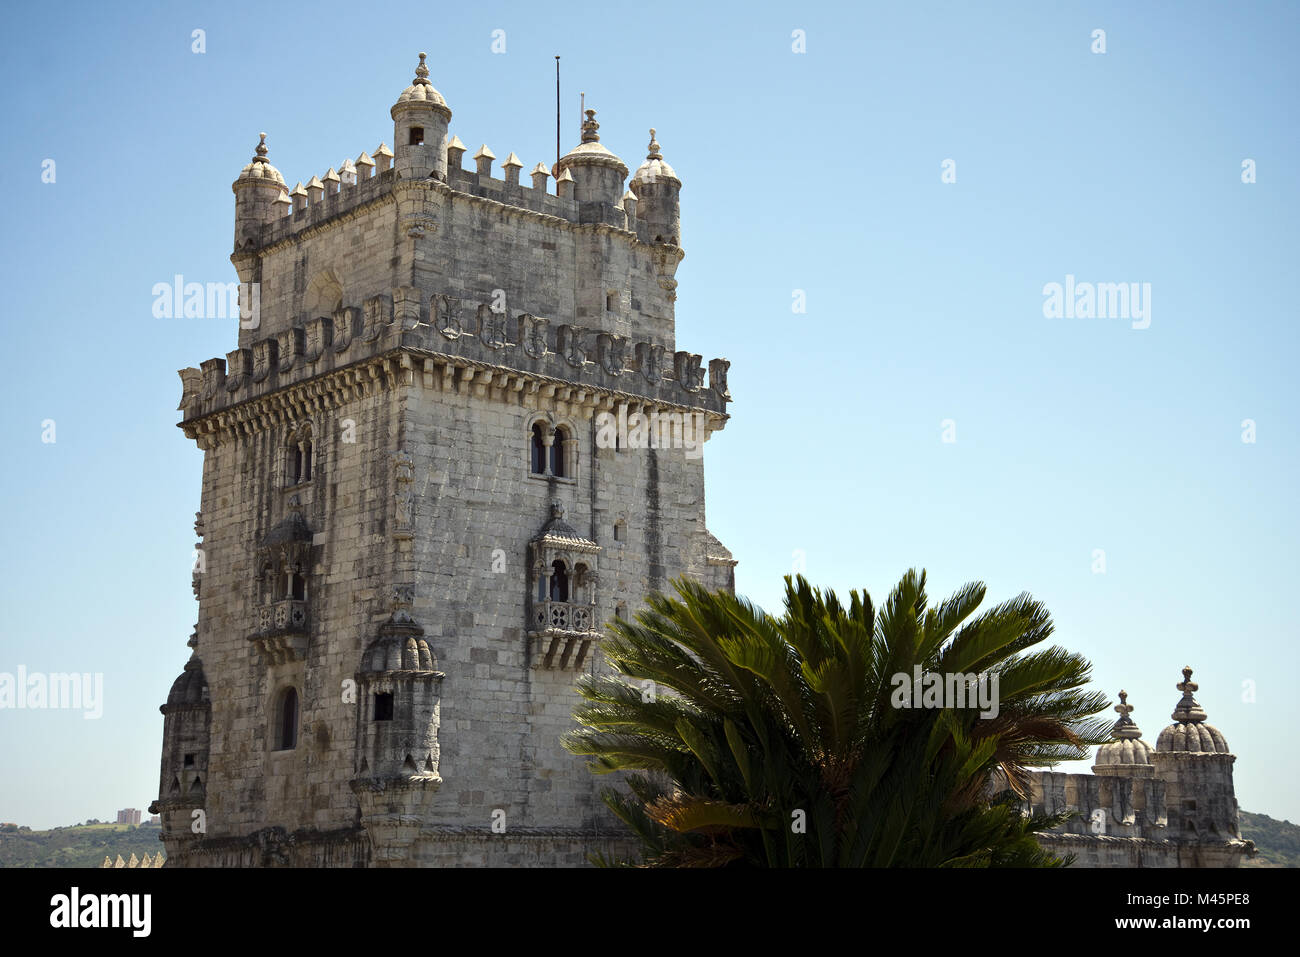 Torre de Belém, Lisbon, Portugal Stock Photo